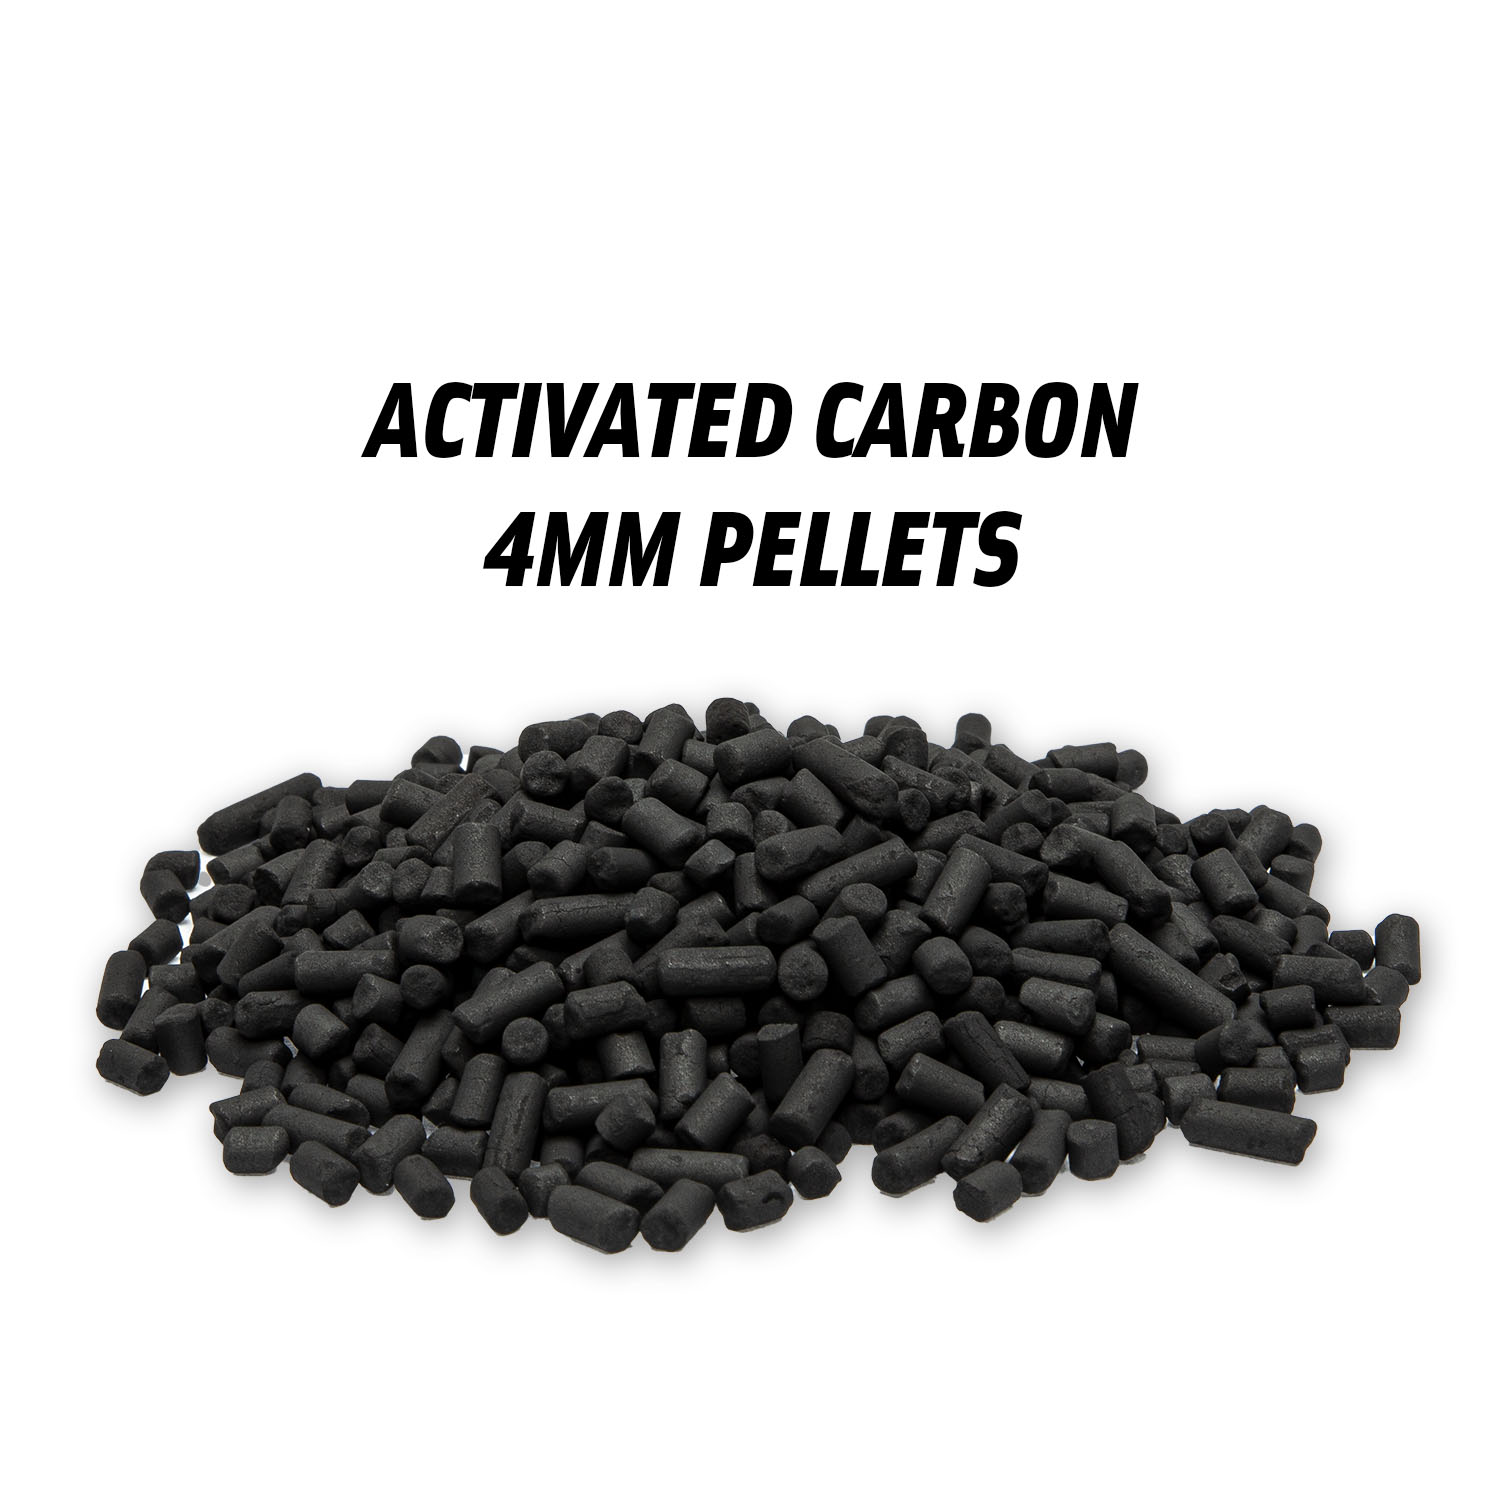 K1804 - 4 mm pellets, 2,5 kg of activated carbon - primaklima – filtration,  ventilation, metal forming